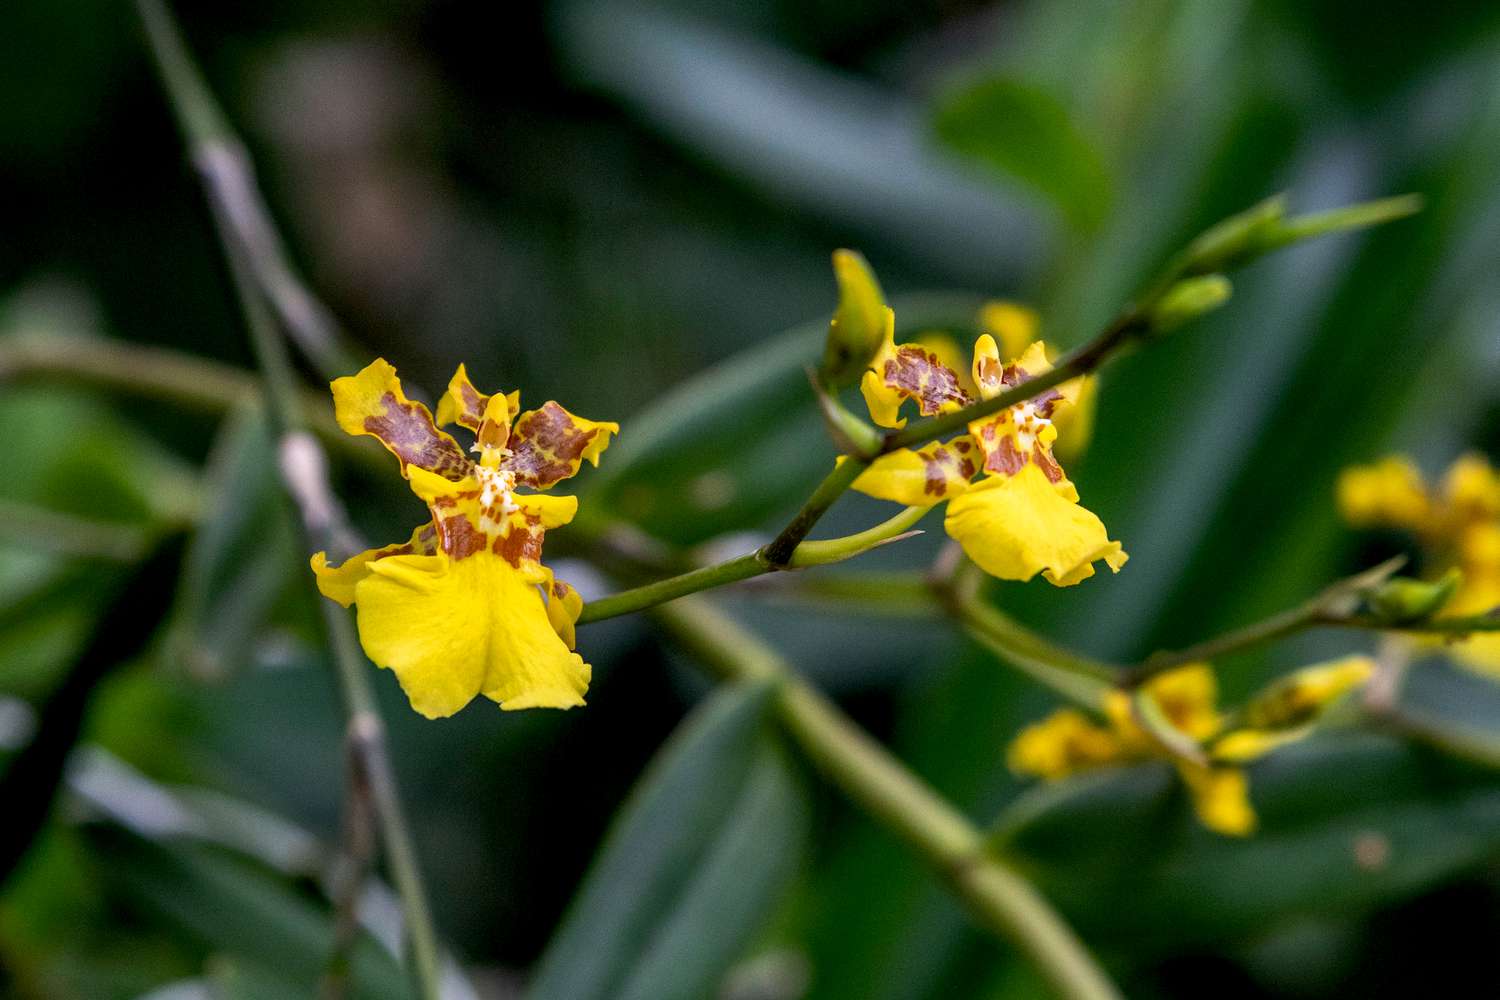 Psychopsis-Orchidee mit gelben und braunen Kelchblättern am Stiel mit Knospen